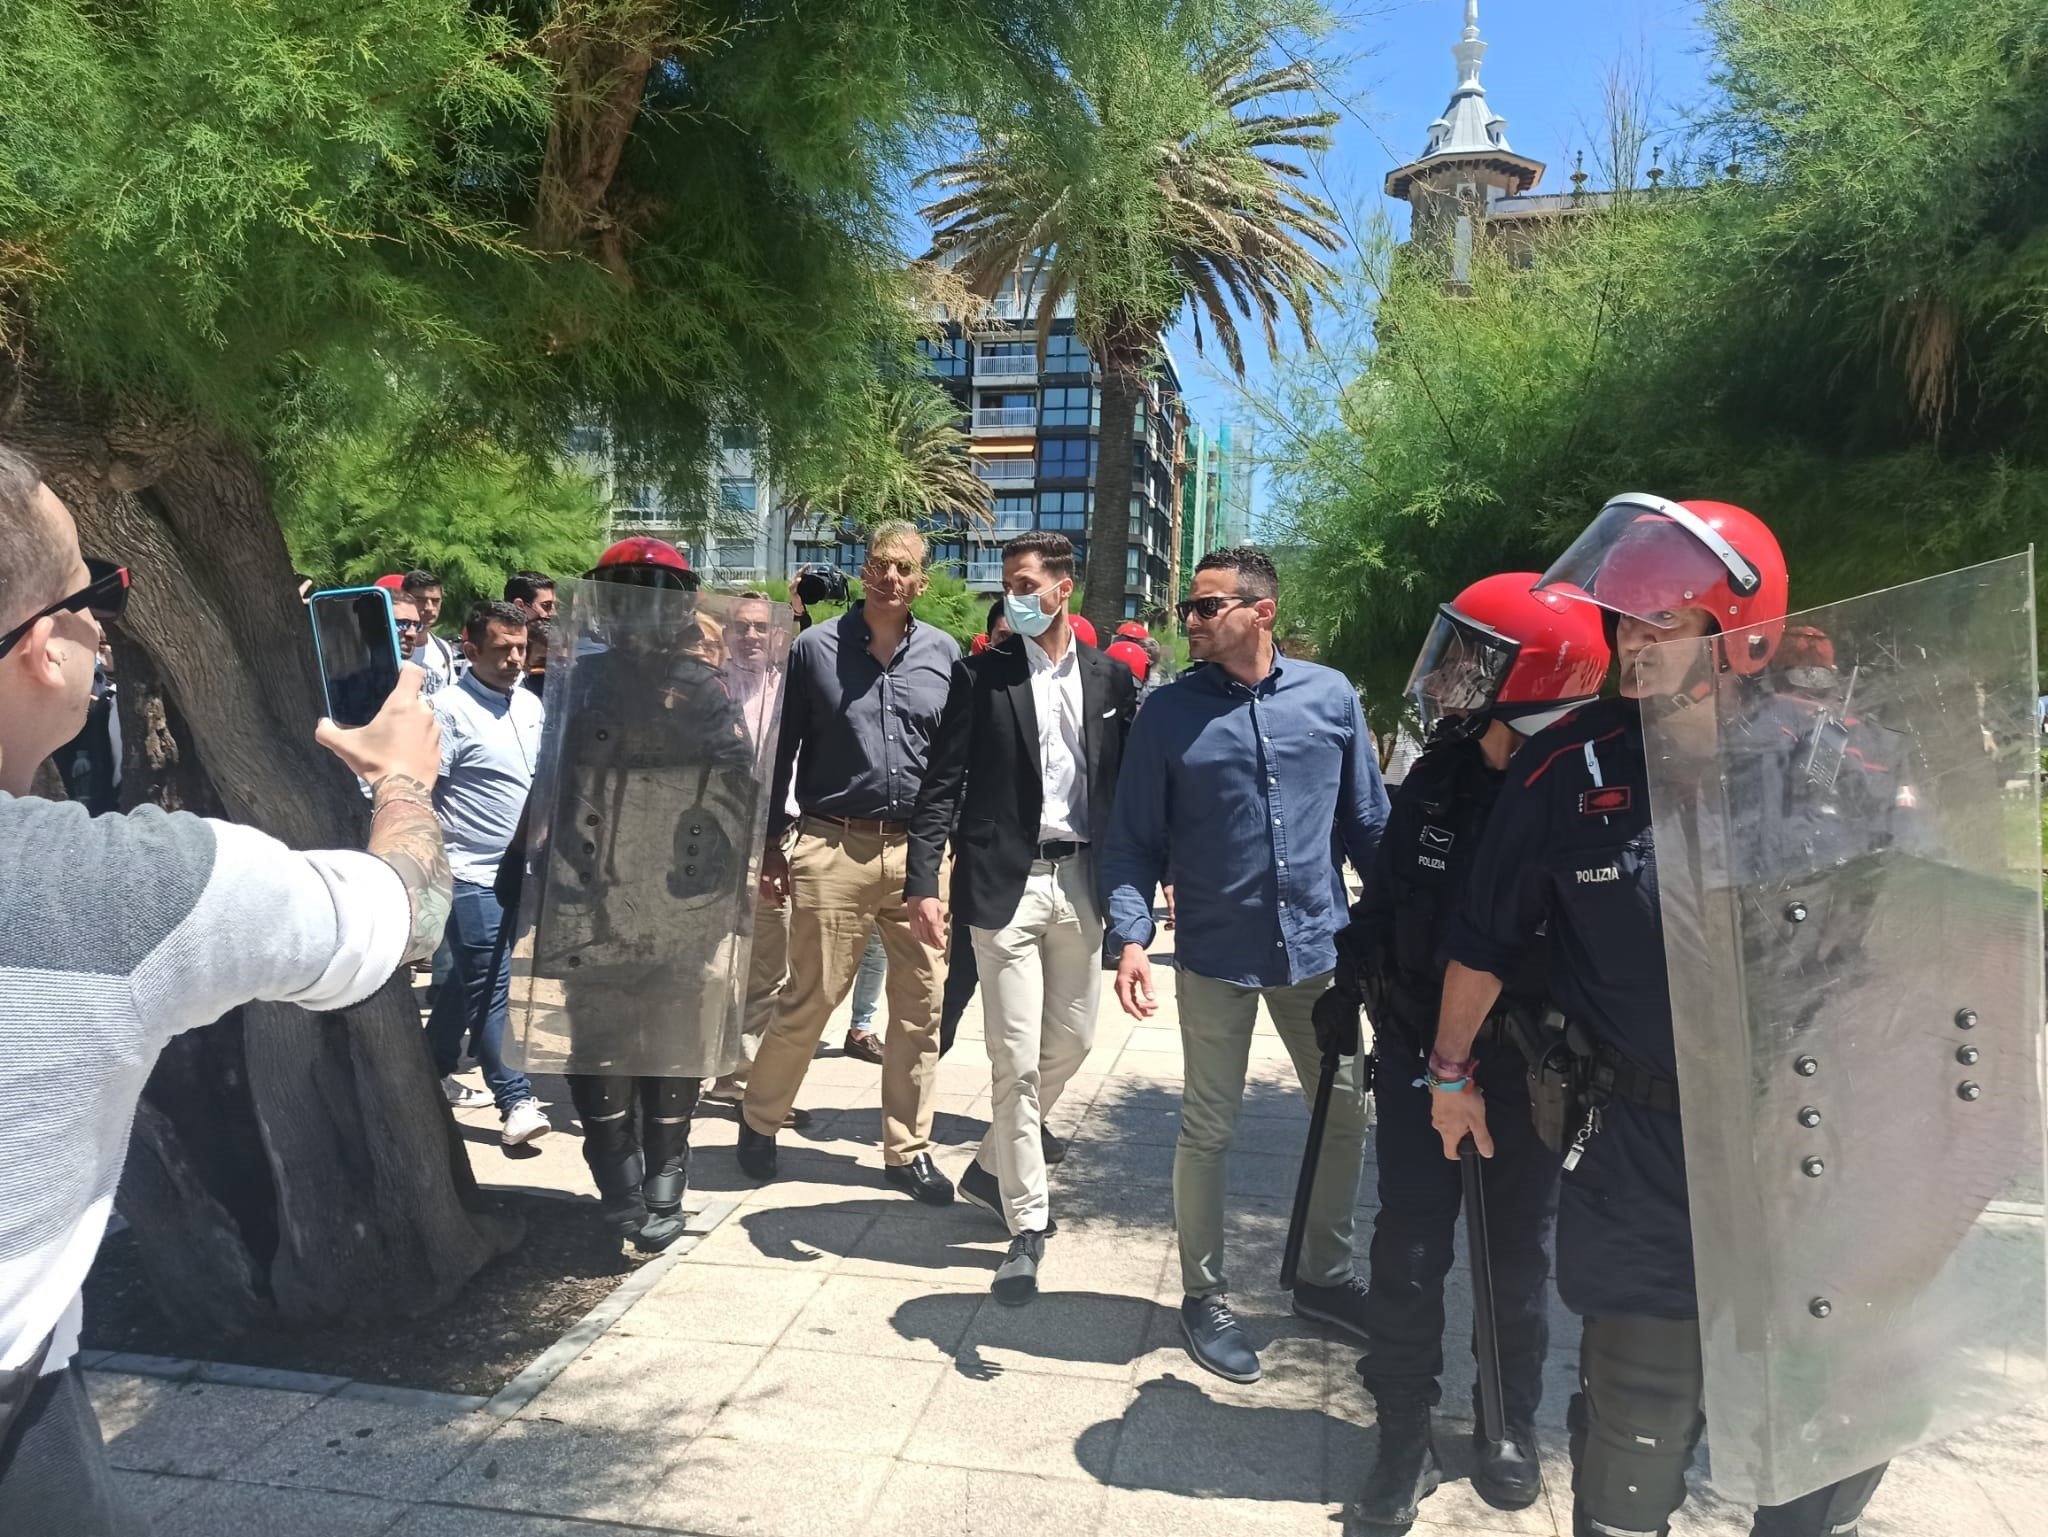 Tensión en una visita-provocación de Vox en San Sebastián